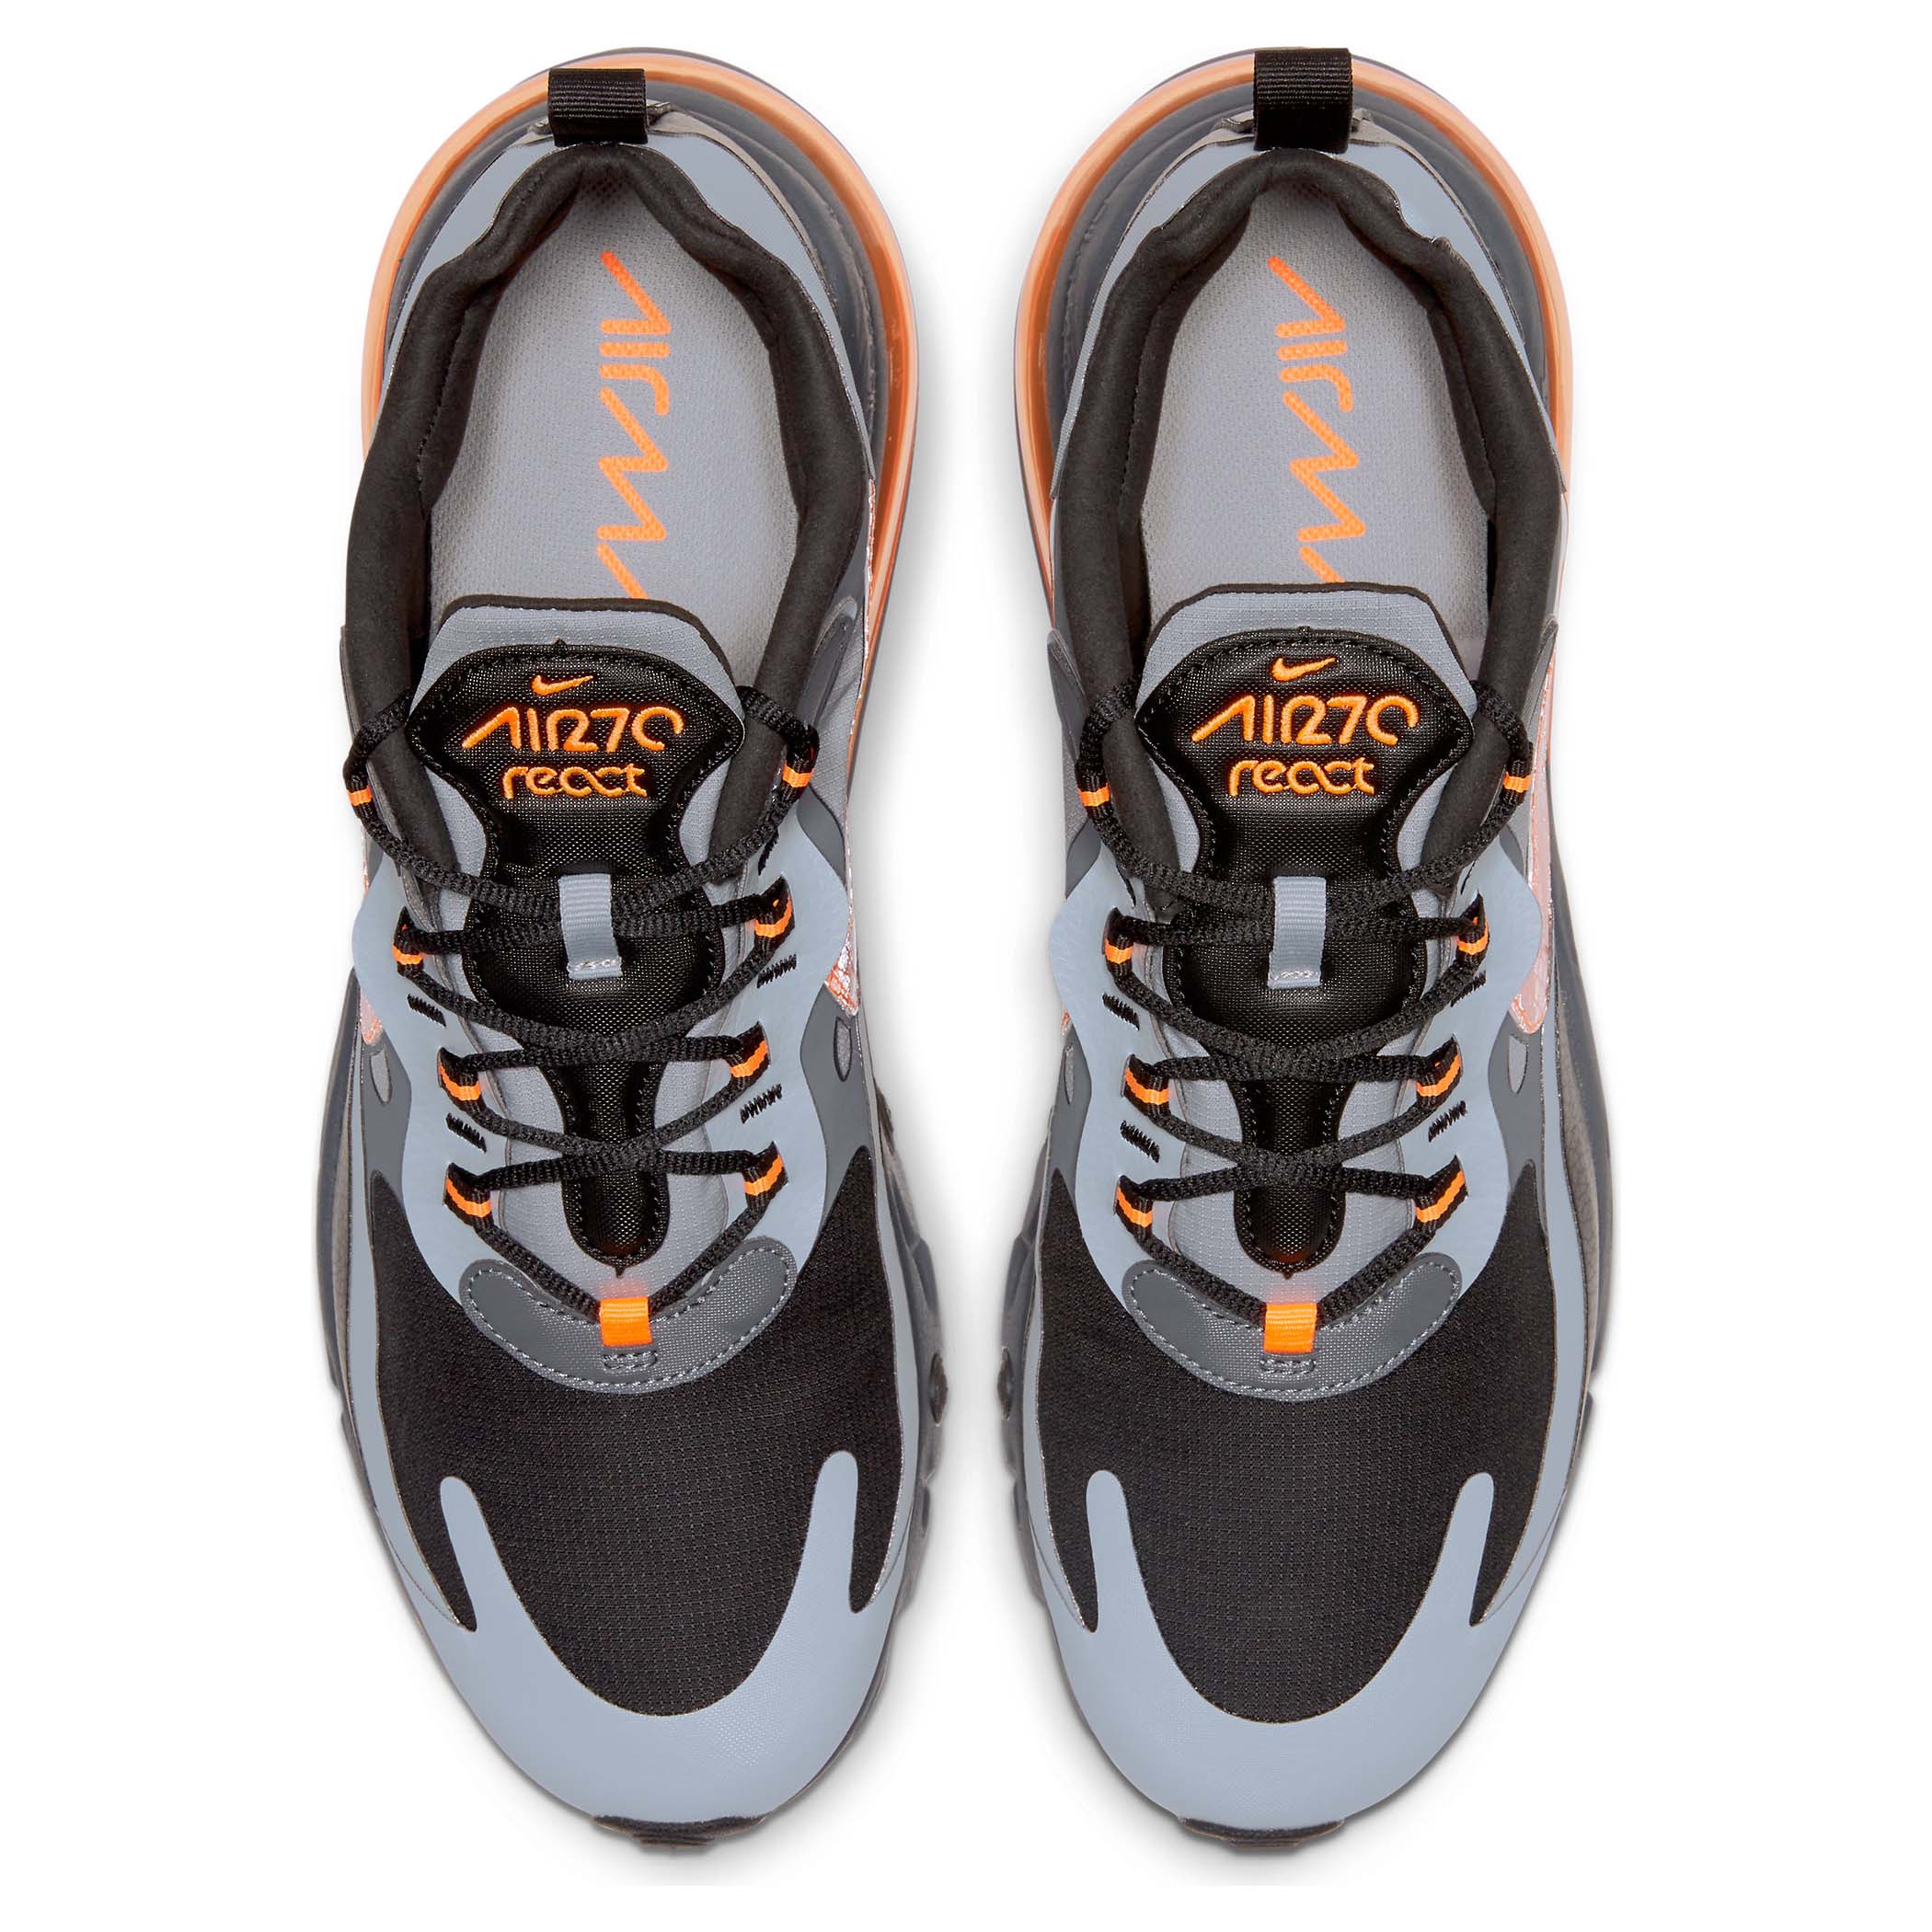 grey and orange air max 270